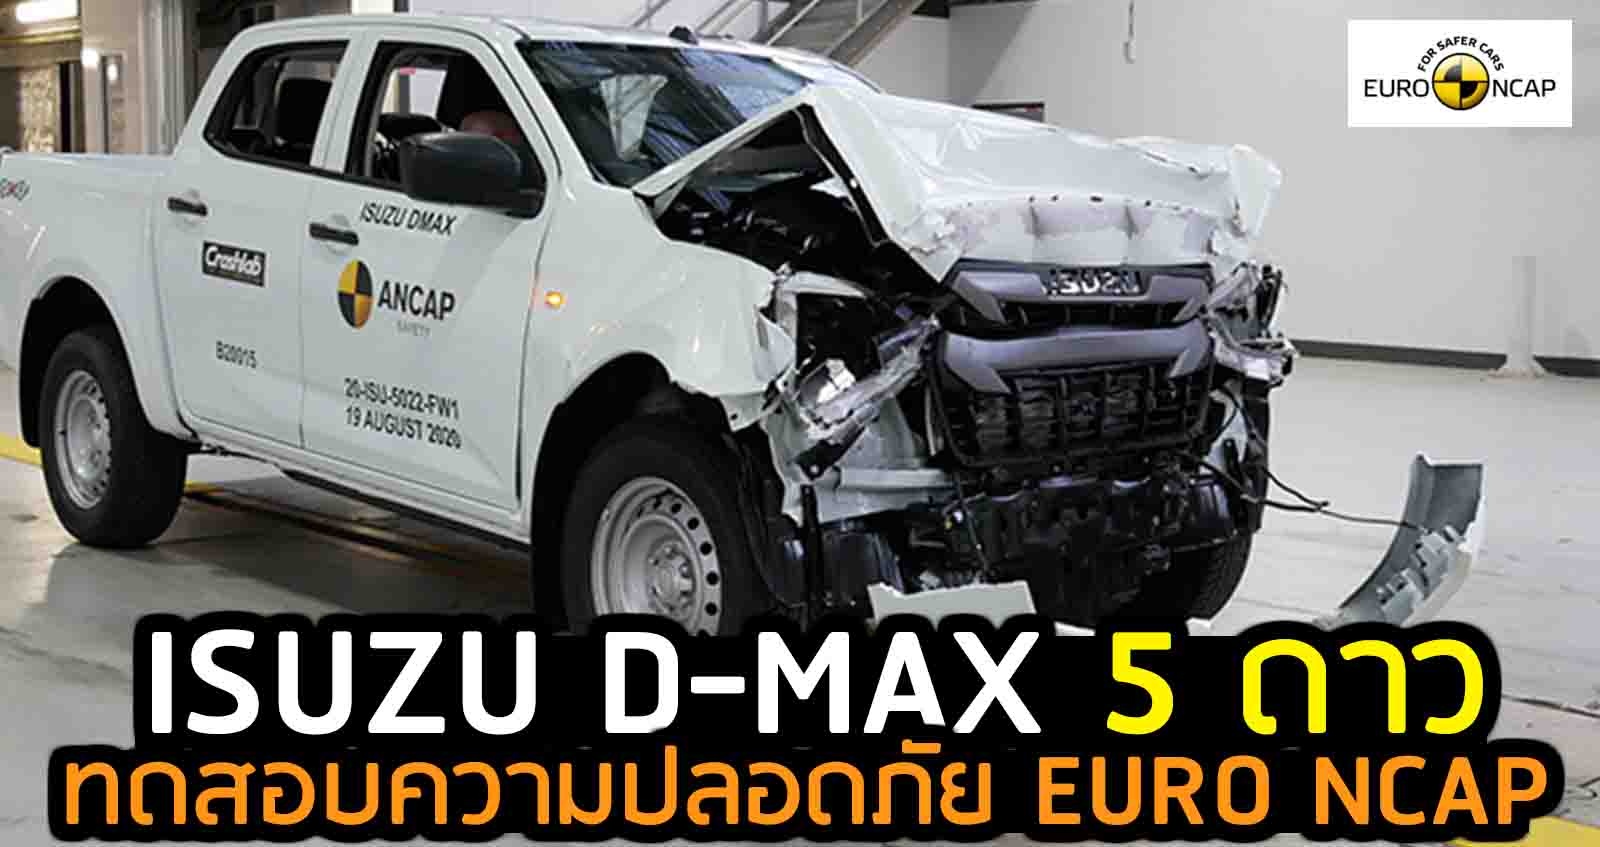 ISUZU D-MAX 5 ดาว ทดสอบความปลอดภัย EURO NCAP (VDO)